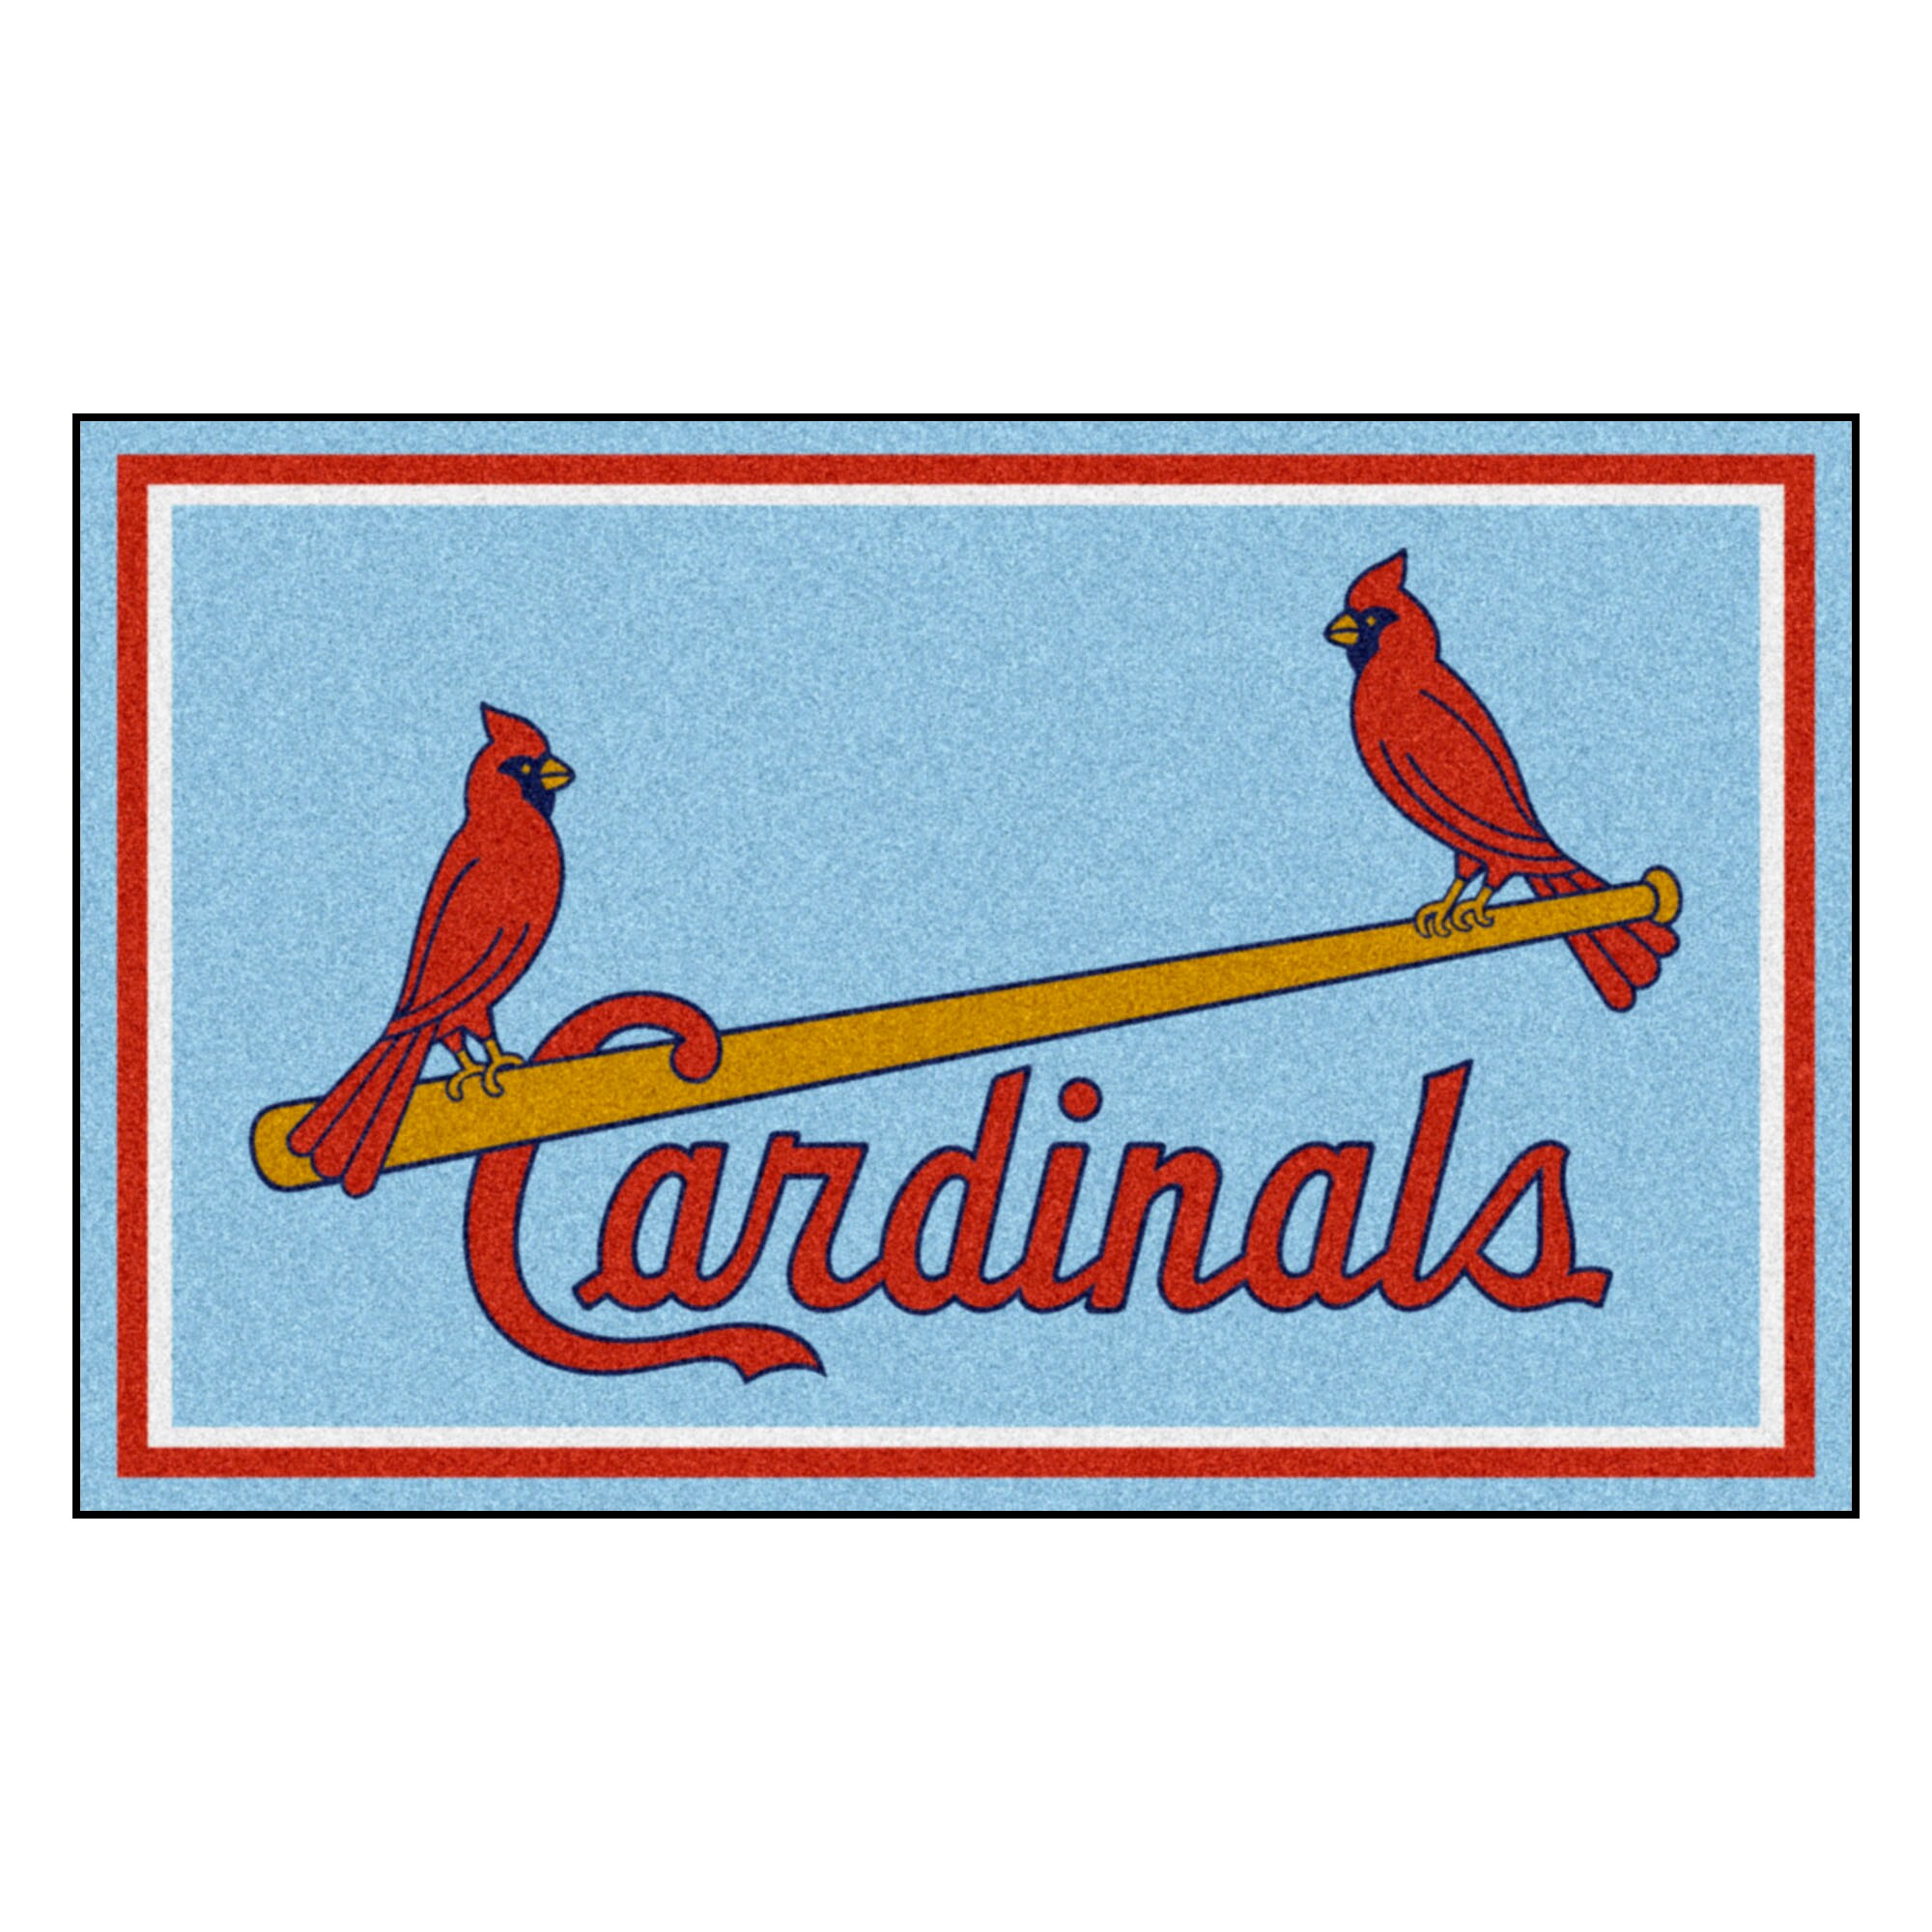 FANMATS St. Louis Cardinals Light Blue 2 ft. x 2 ft. Round Area